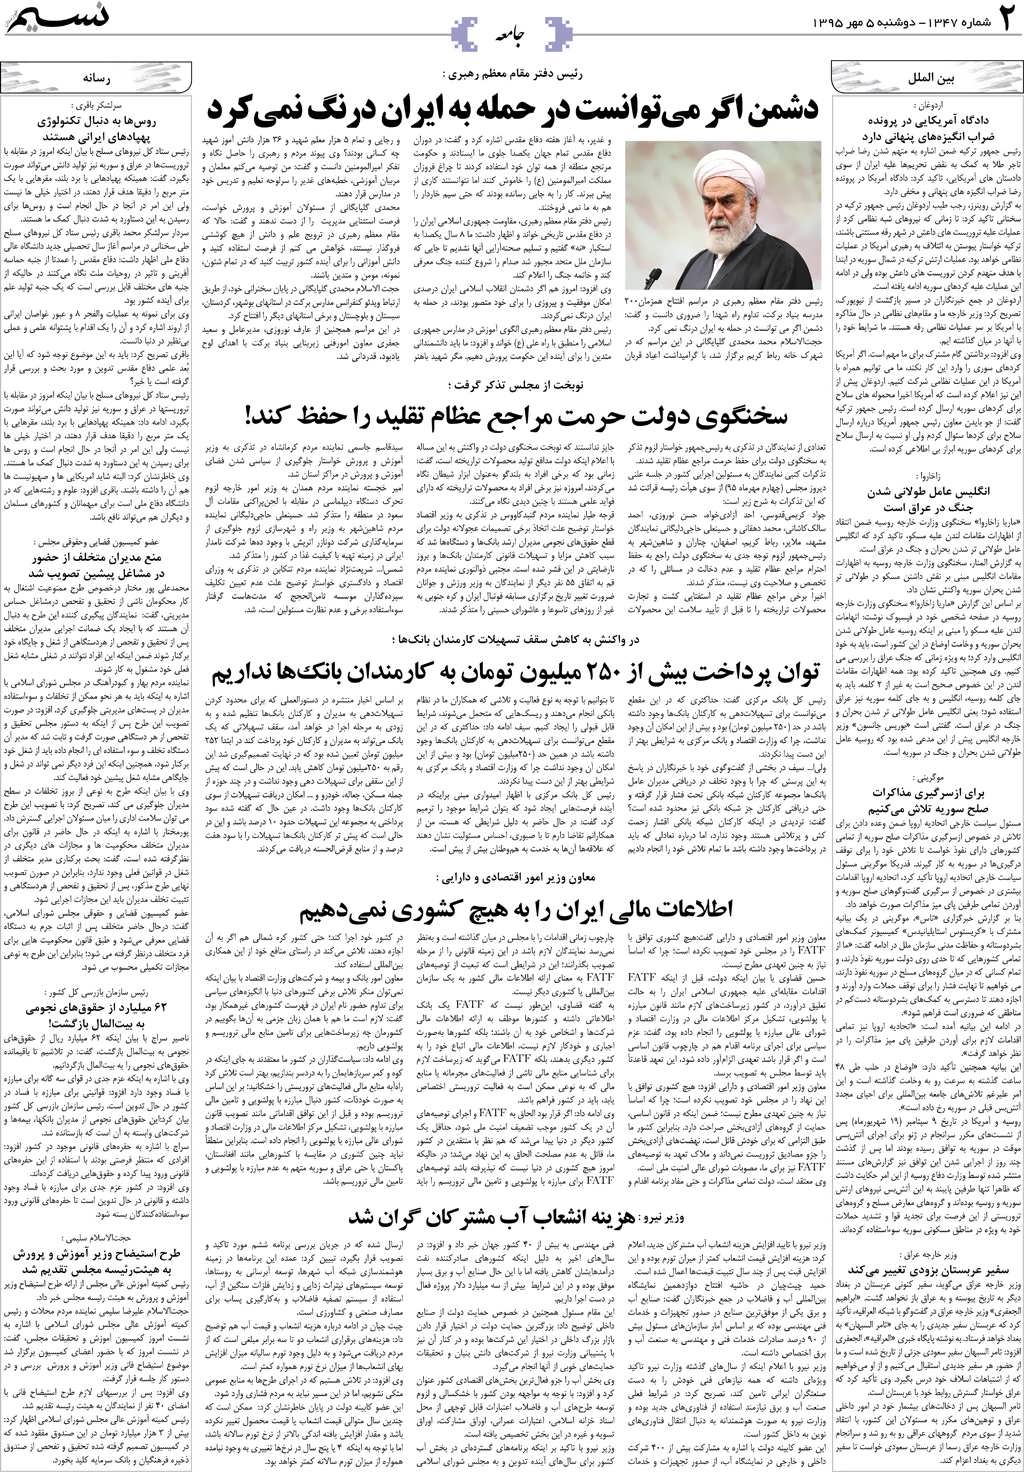 صفحه جامعه روزنامه نسیم شماره 1347